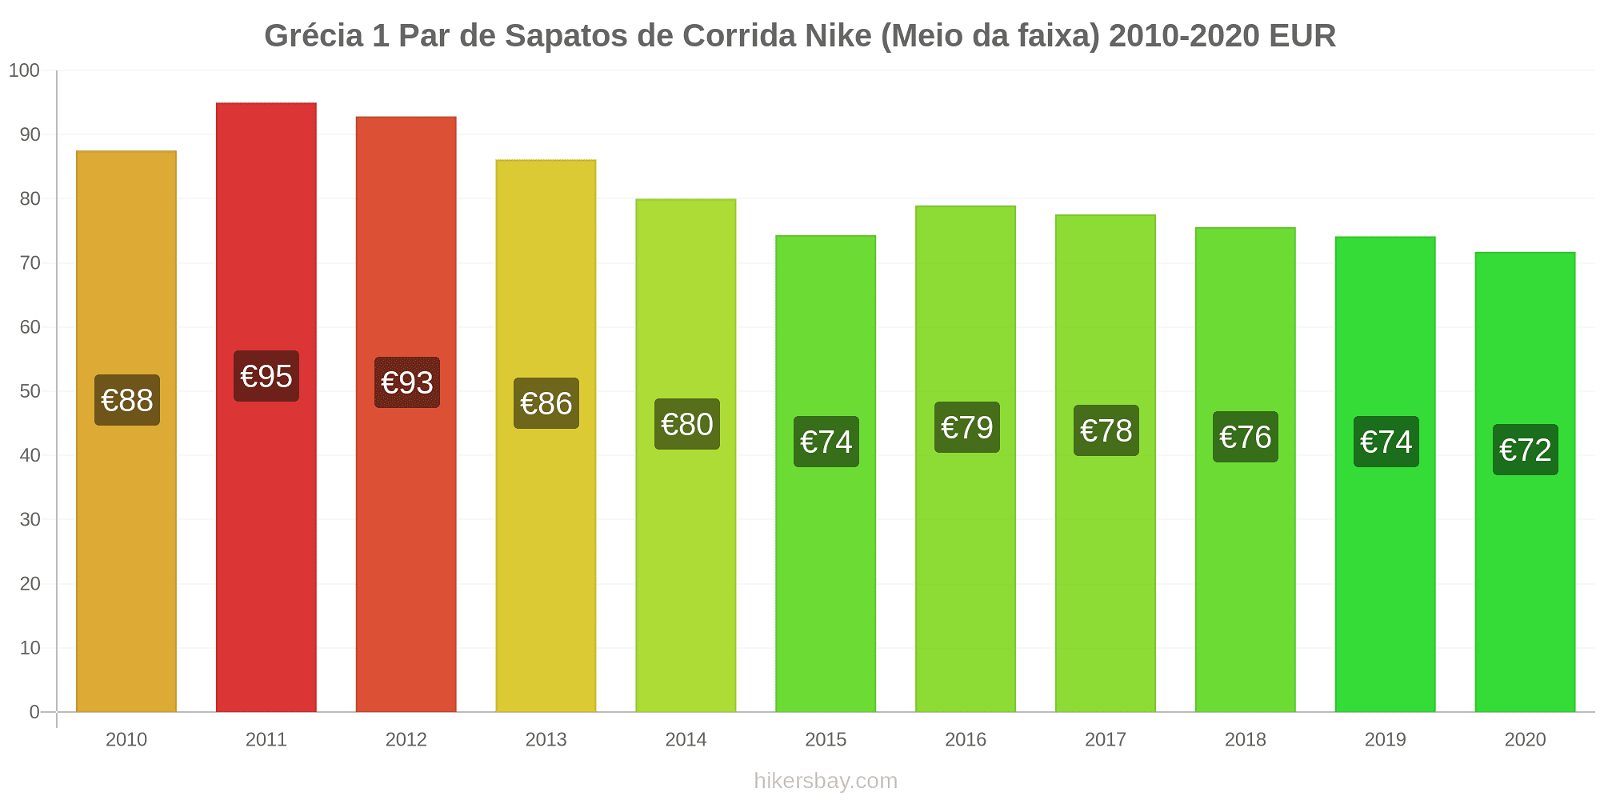 Grécia variação de preço 1 par de tênis Nike (mid-range) hikersbay.com